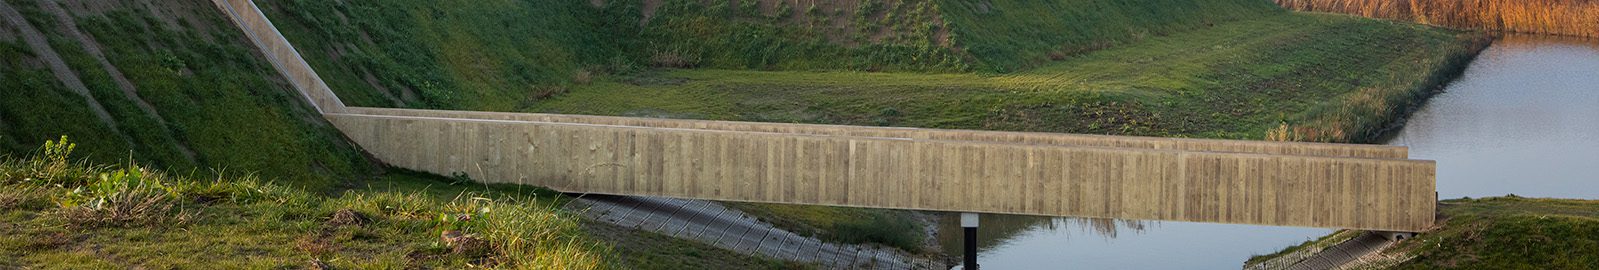 Damsteegt waterwerken -  Voetgangersbrug hout - Header